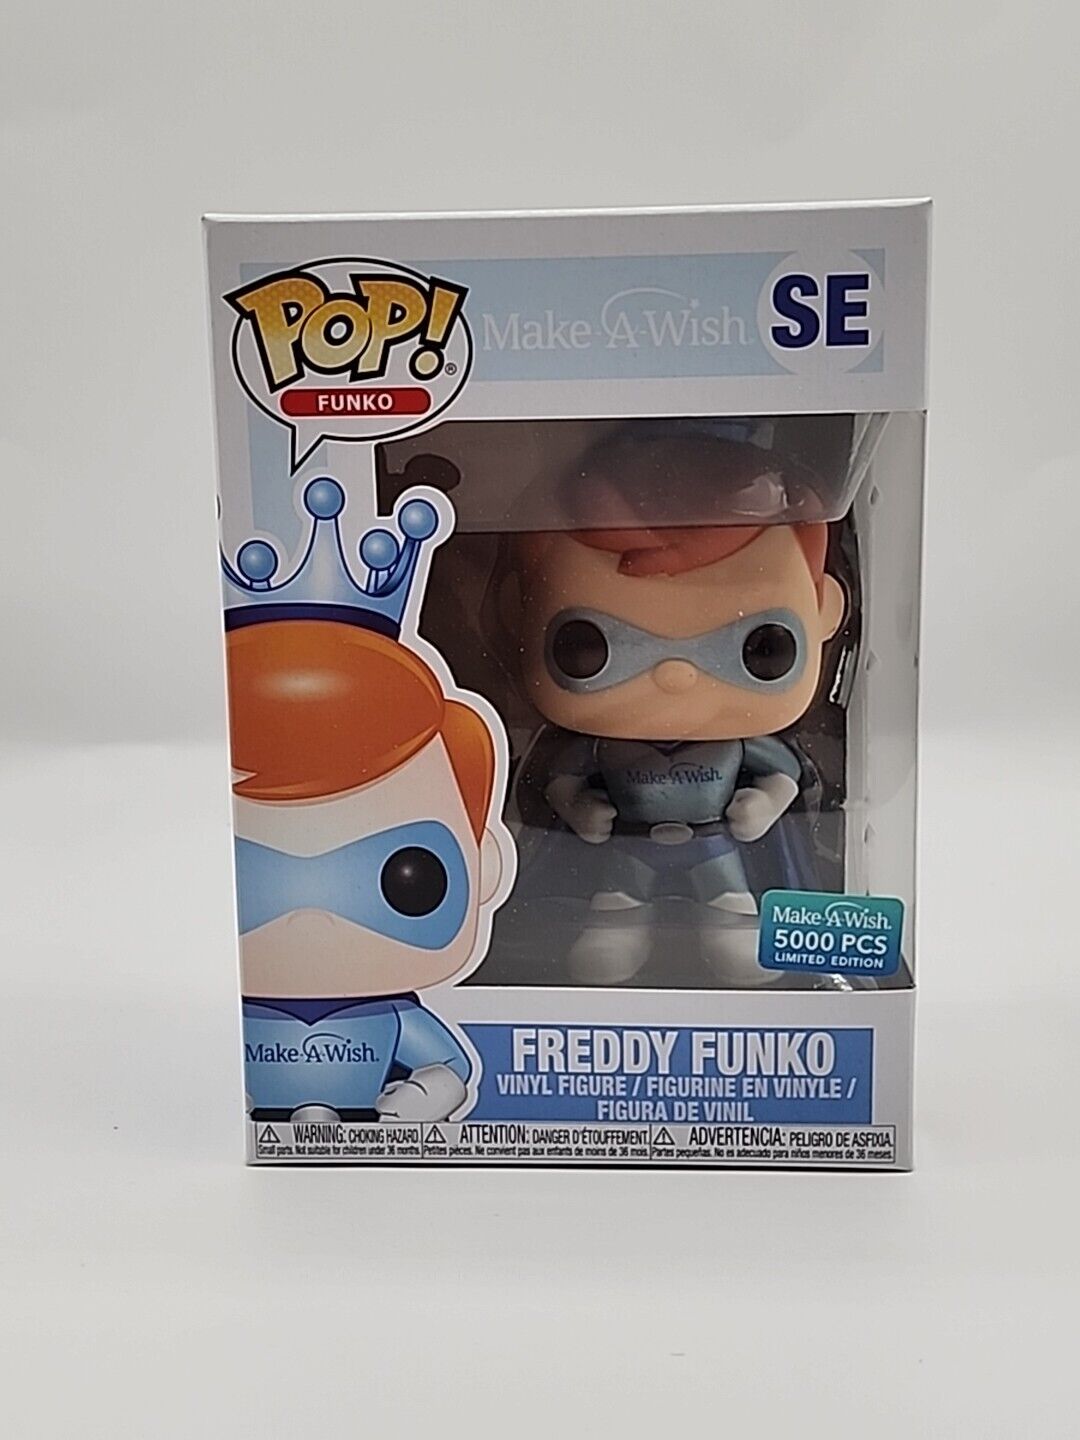 Funko Pop Freddy Funko Make A Wish SE 5000 PCS Limited Edition w/protector